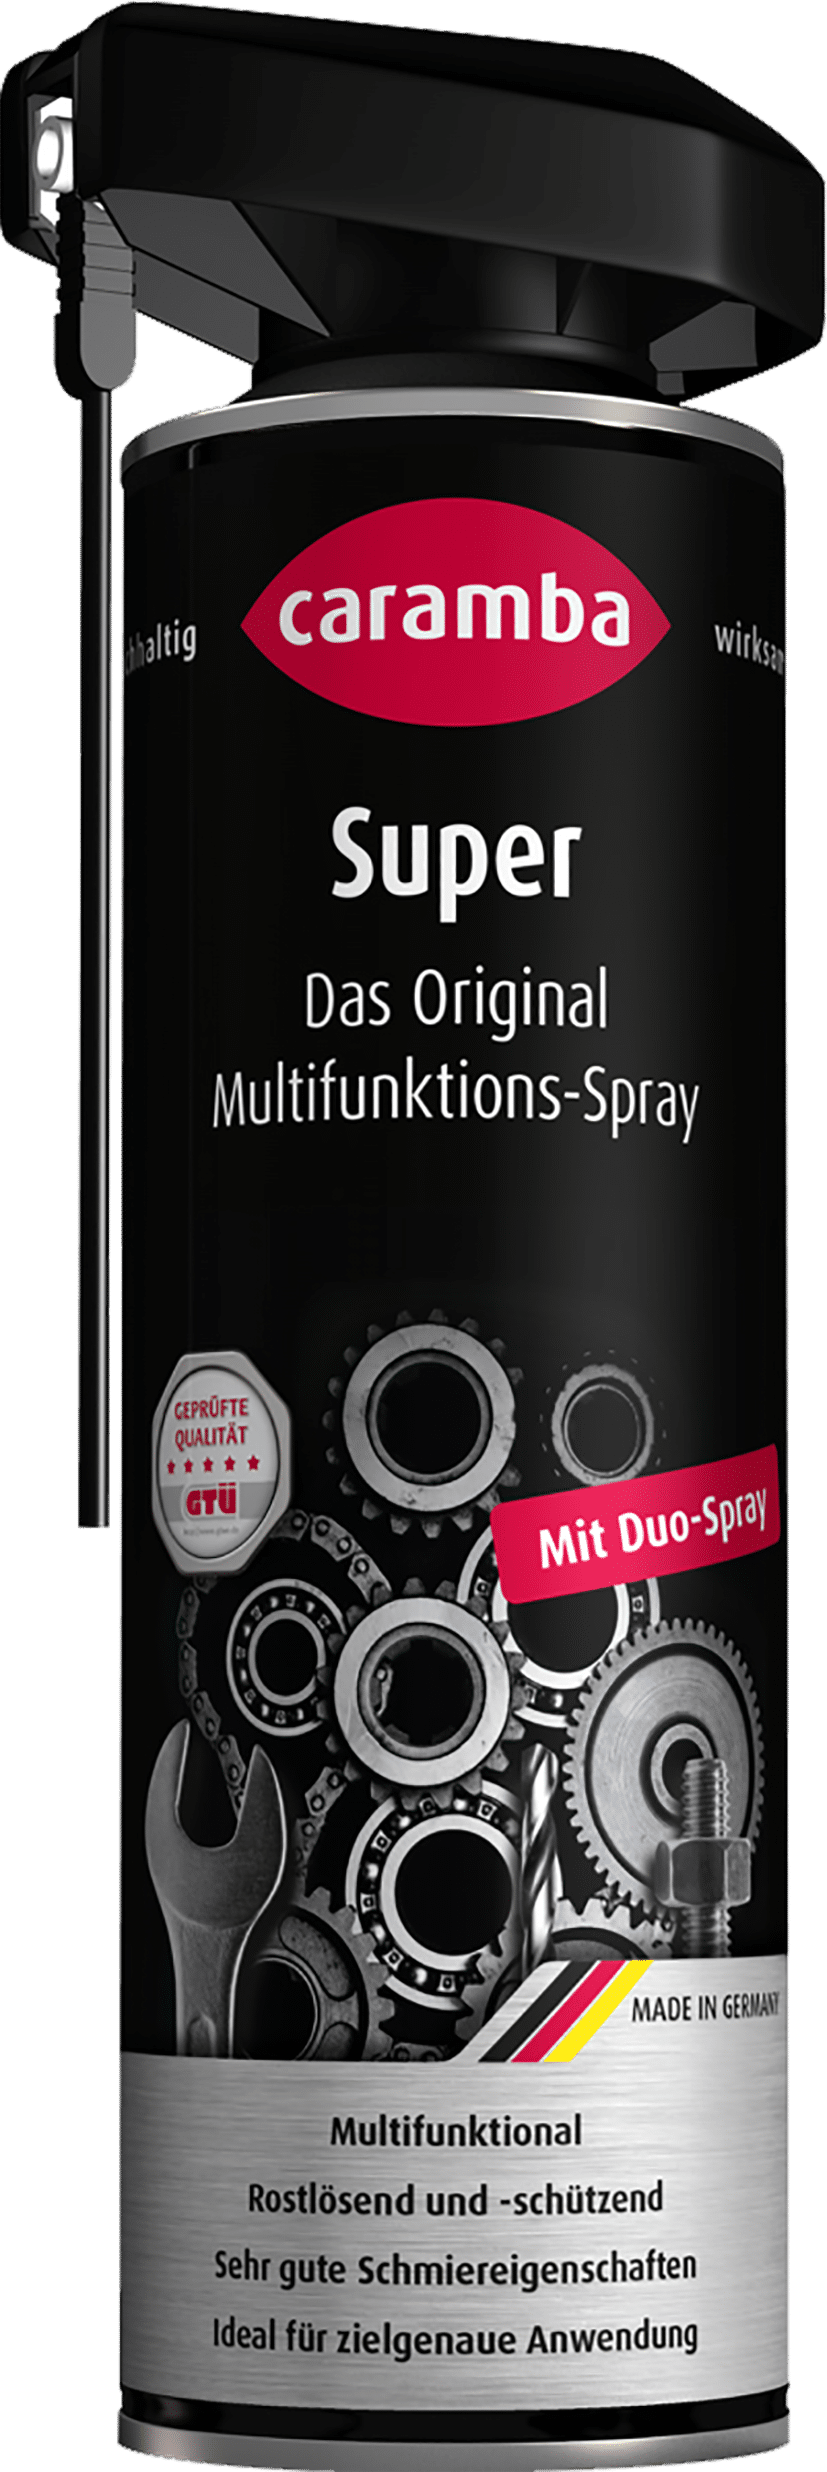 Super Multifunktions-Spray